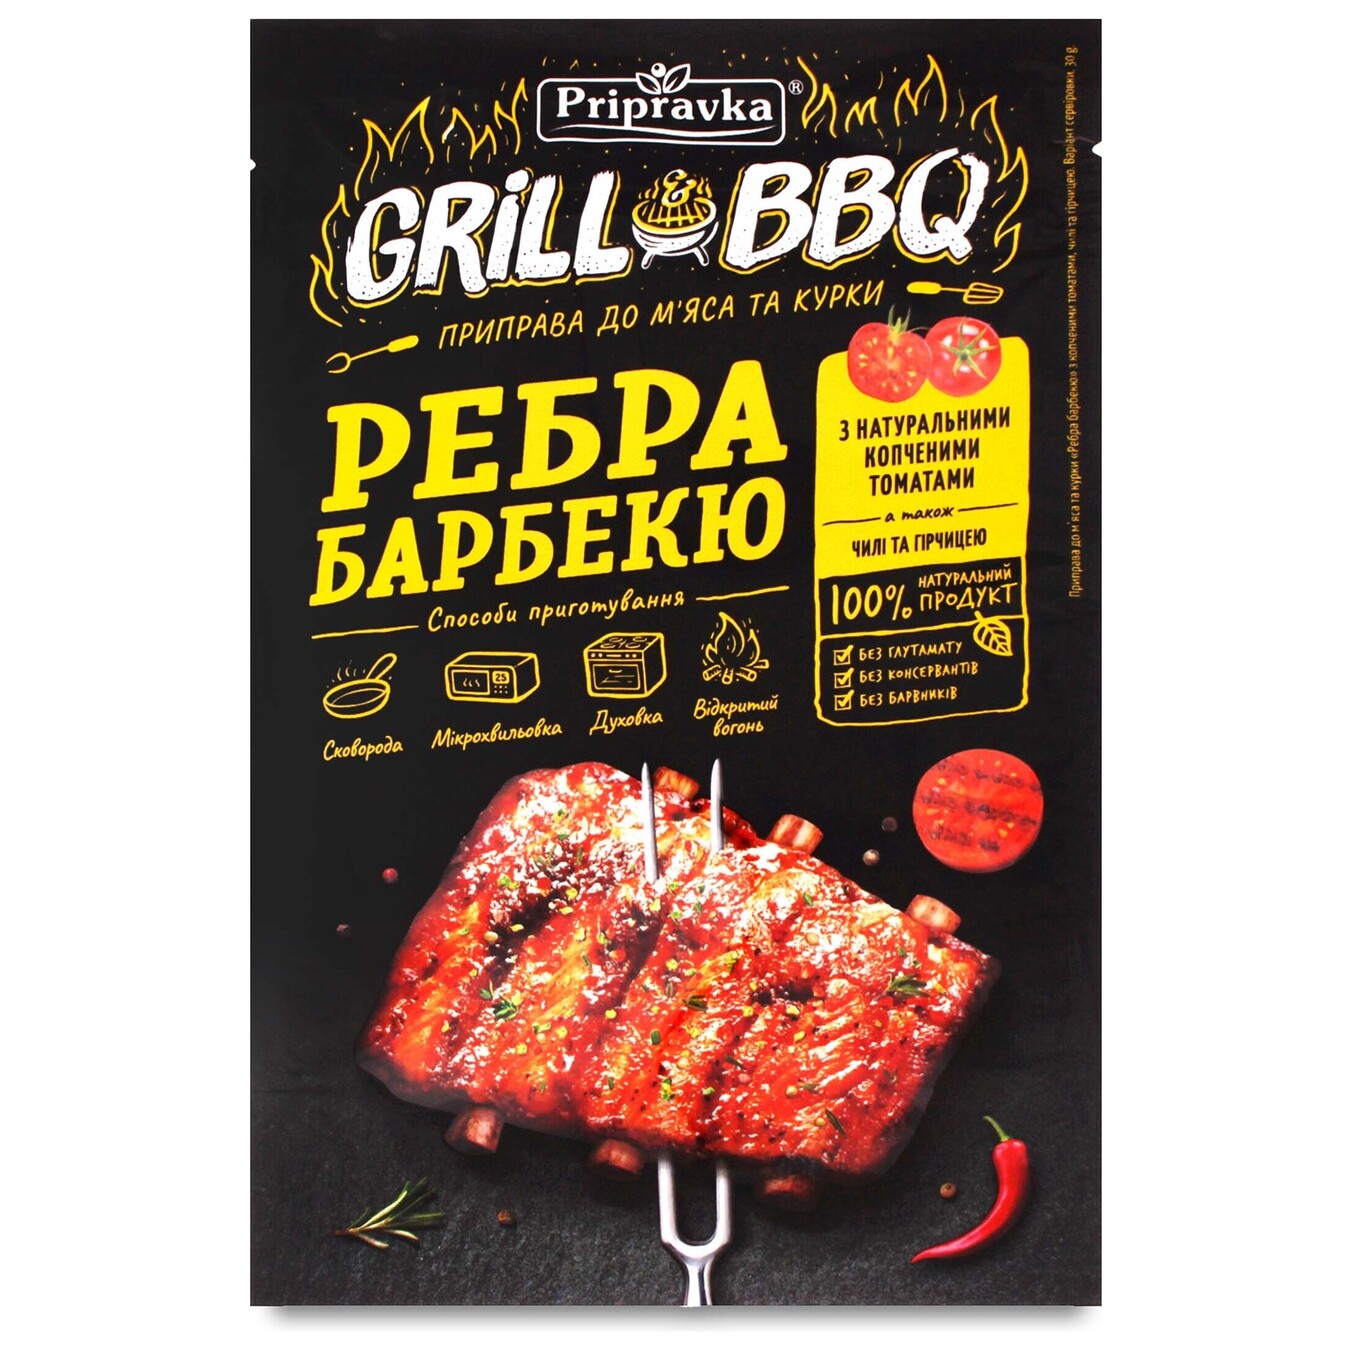 Приправа Pripravka Grill & BBQ для м'яса і курки Ребра барбекю з копченими томатами чилі і гірчицею 30г